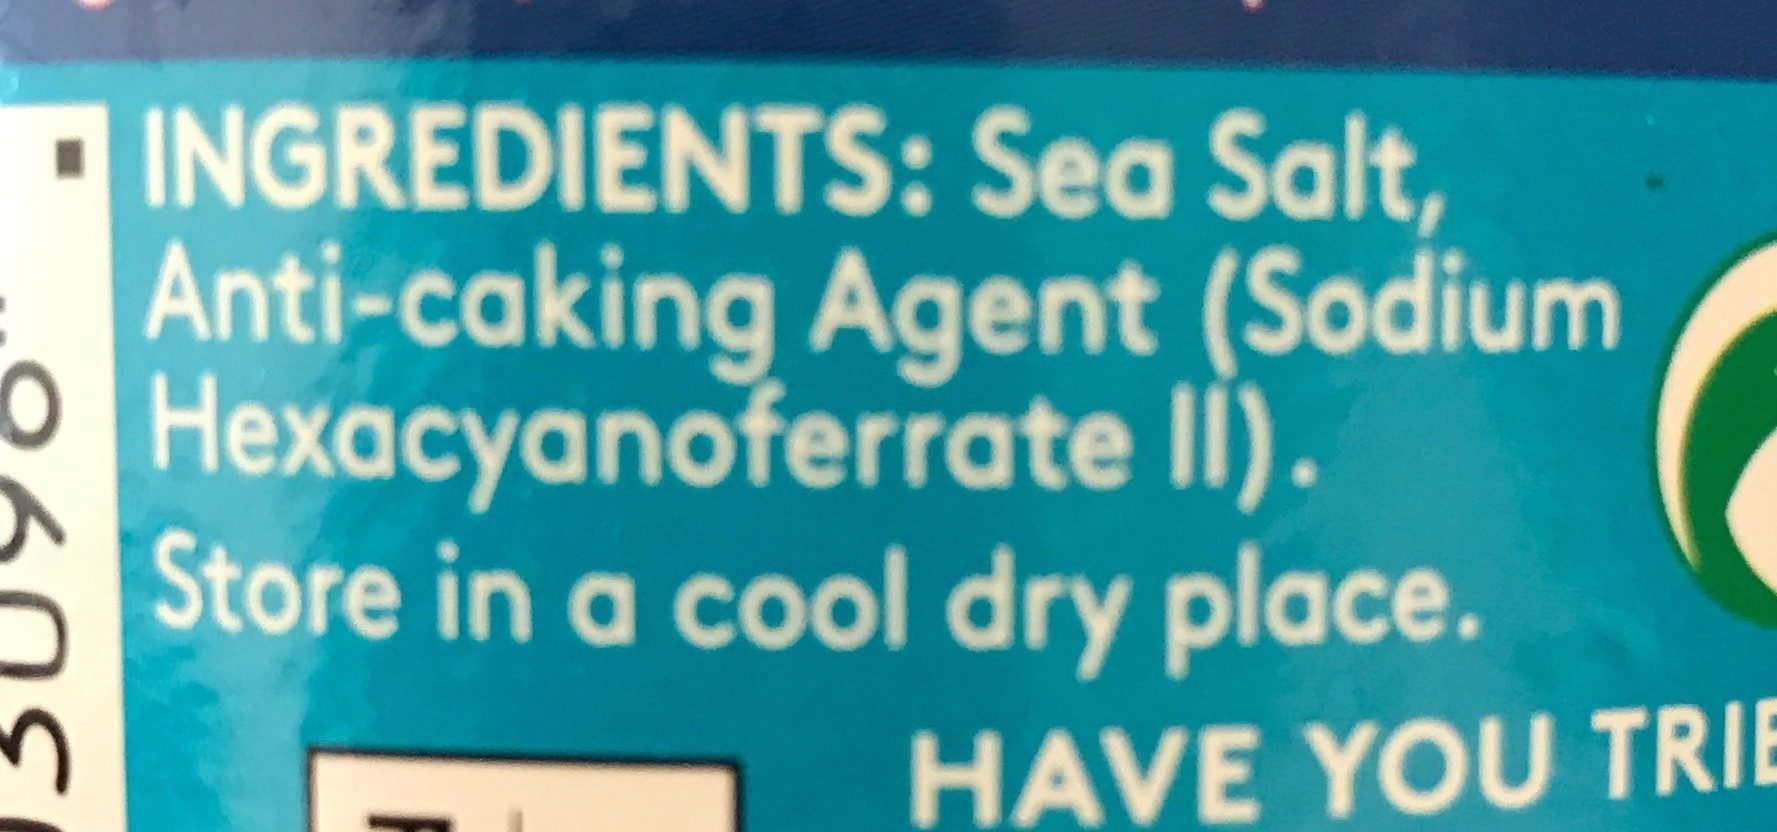 Saxa Sea Salt Fine - Ingredients